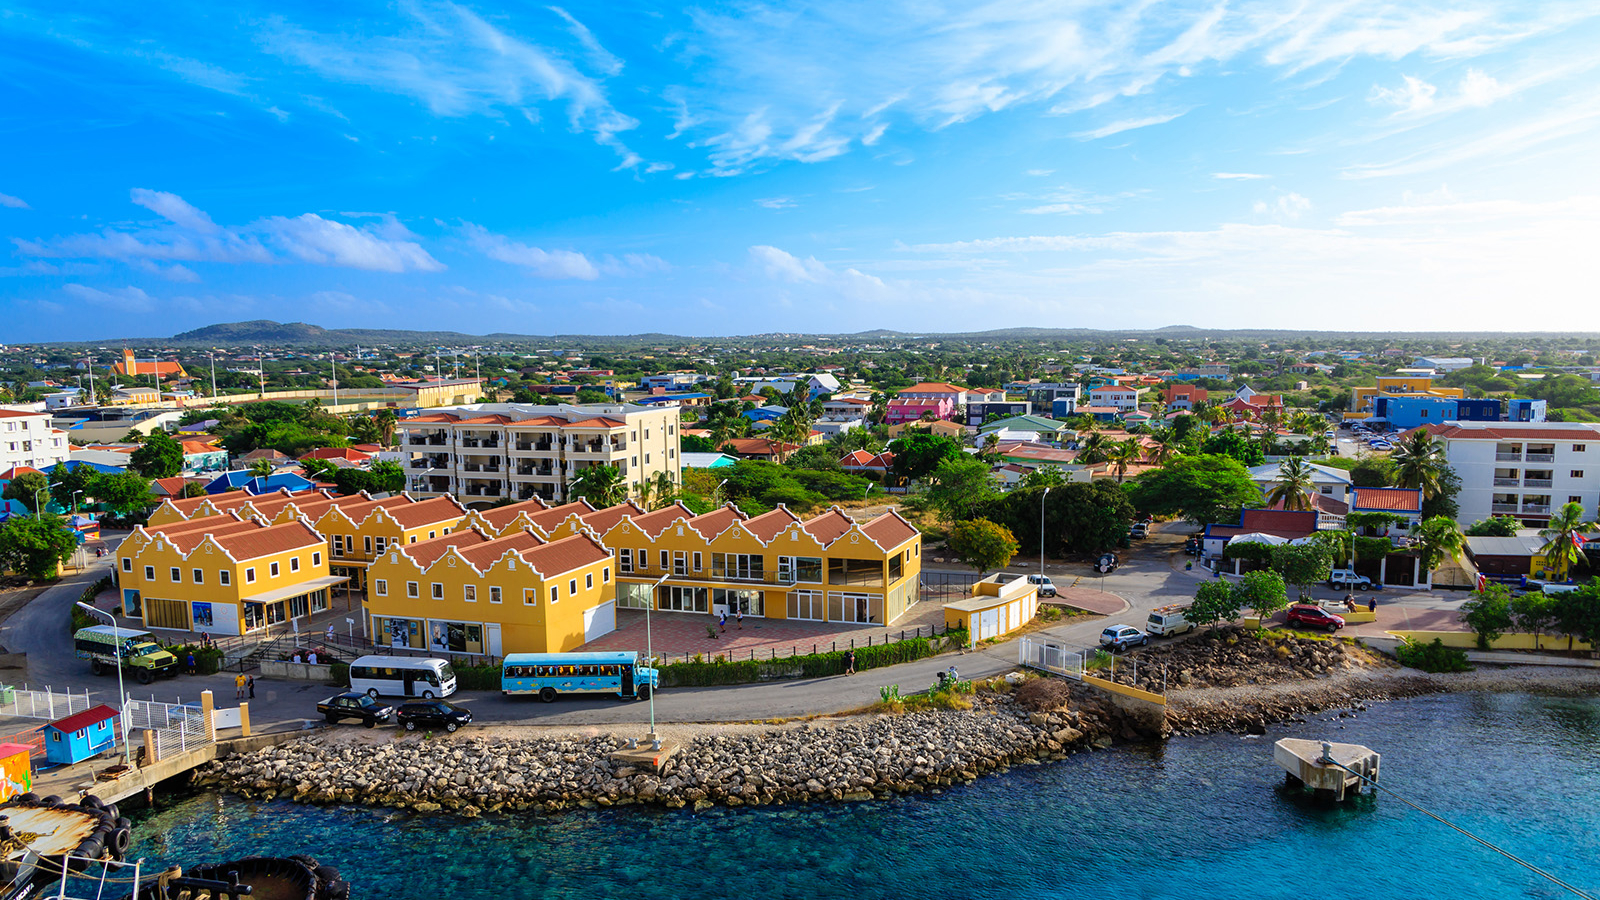 Kralendijk, Bonaire.